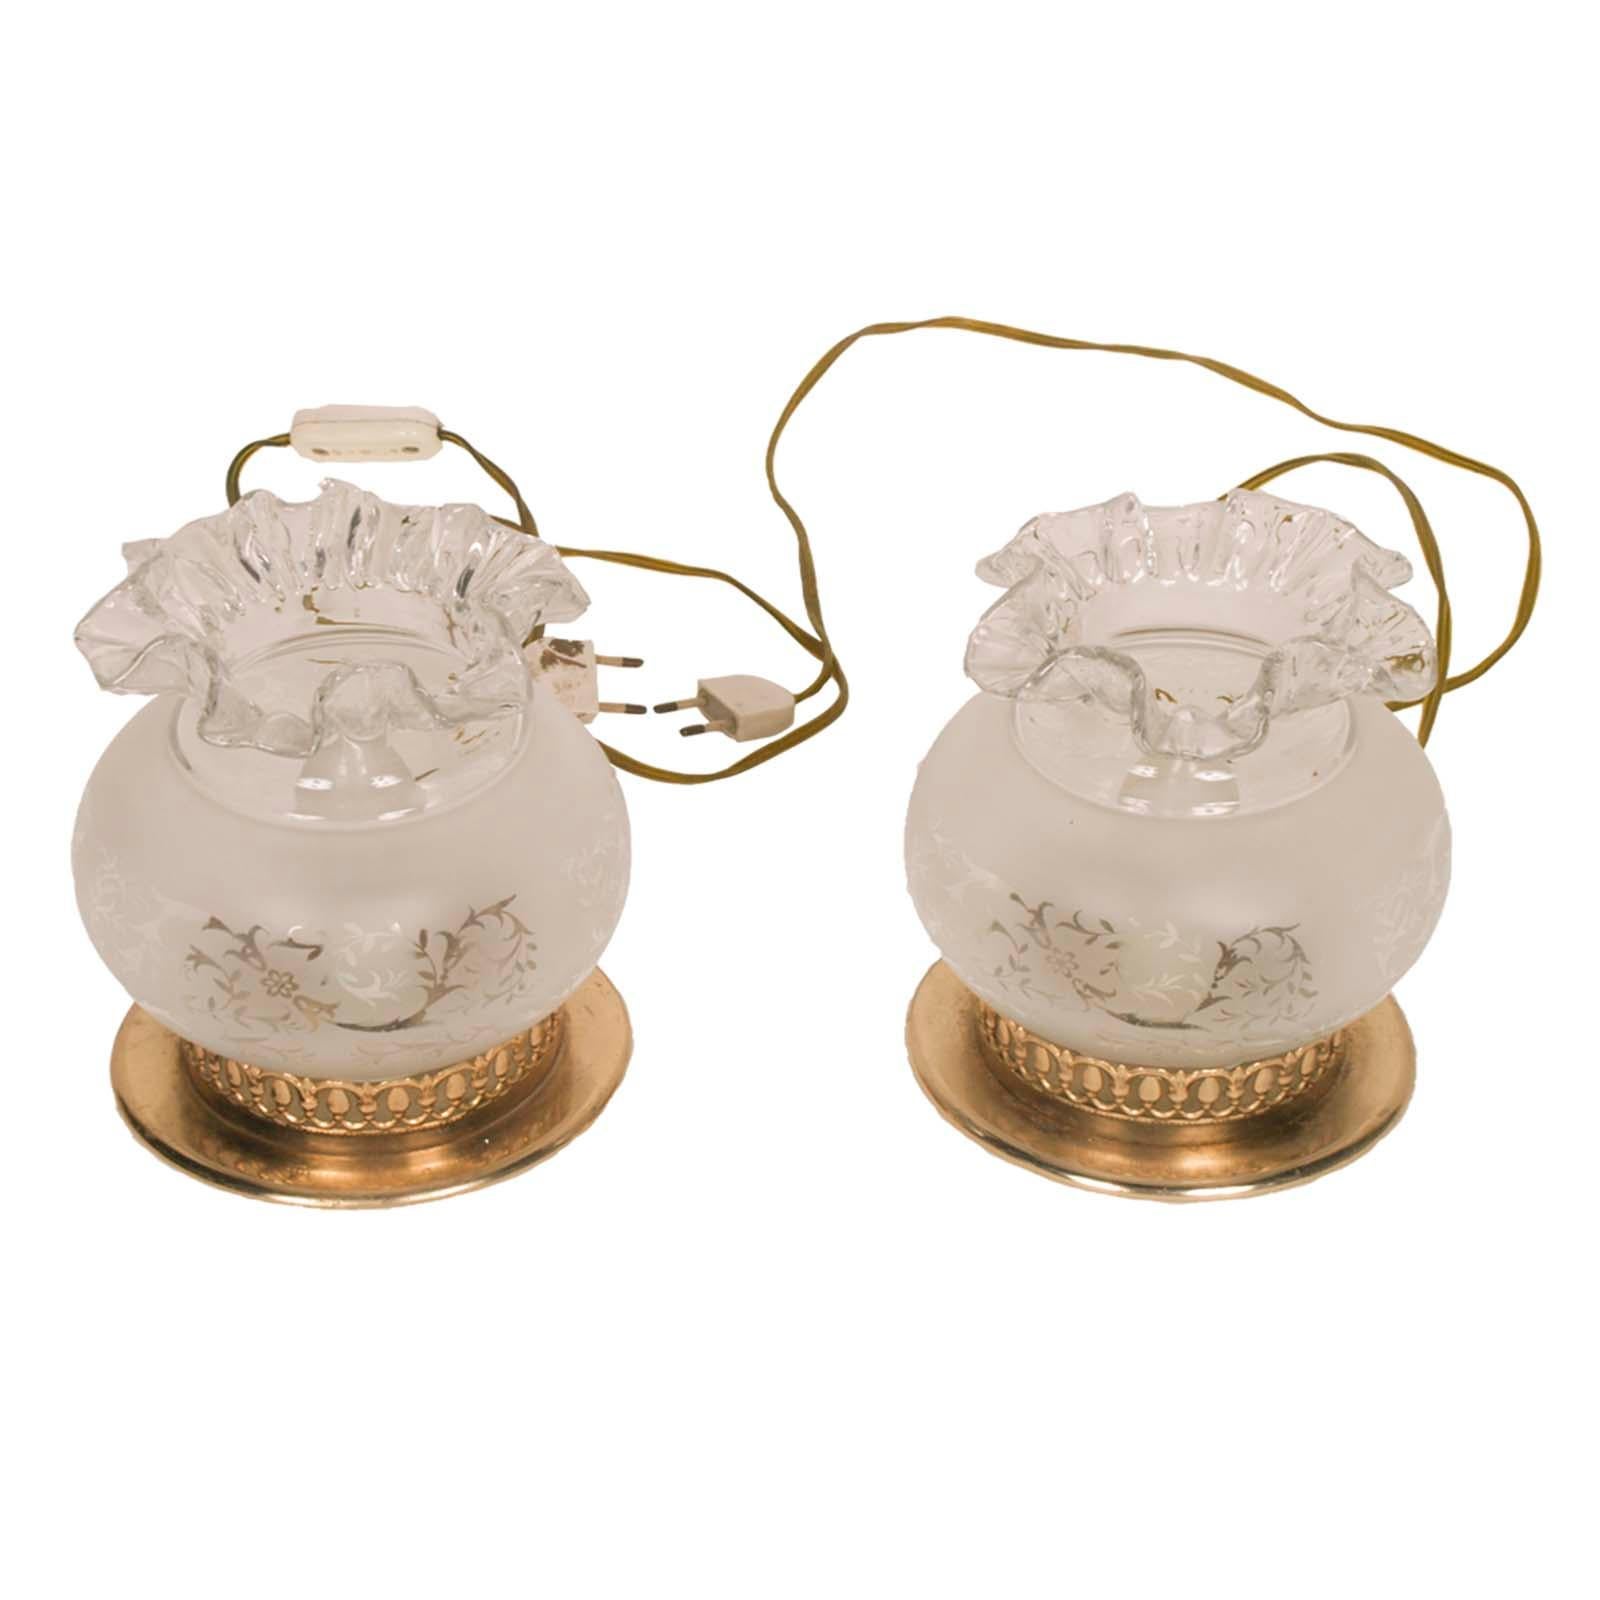 lampes de table des années 1920 en laiton doré avec décor en verre de Murano sablé, prêtes à l'emploi ; décorations florales romantiques en transparence de verre de Murano sablé.